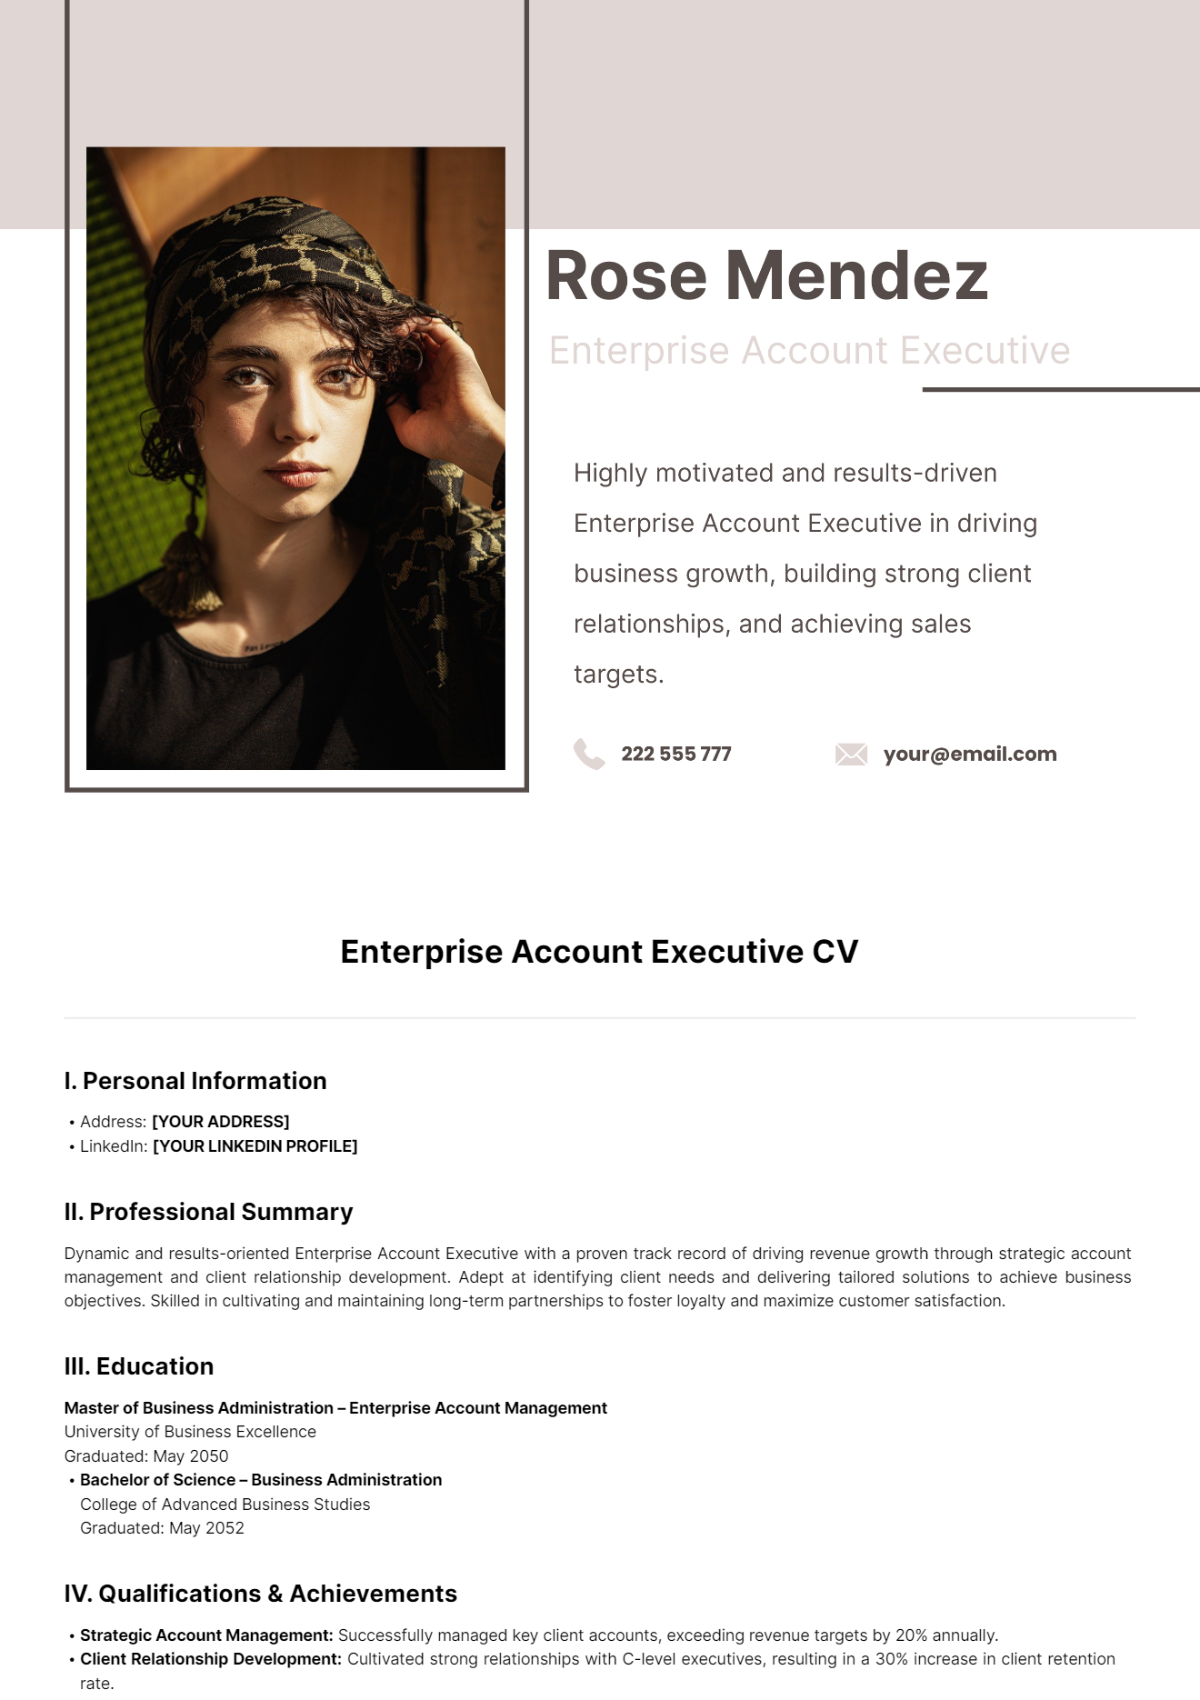 Enterprise Account Executive CV Template